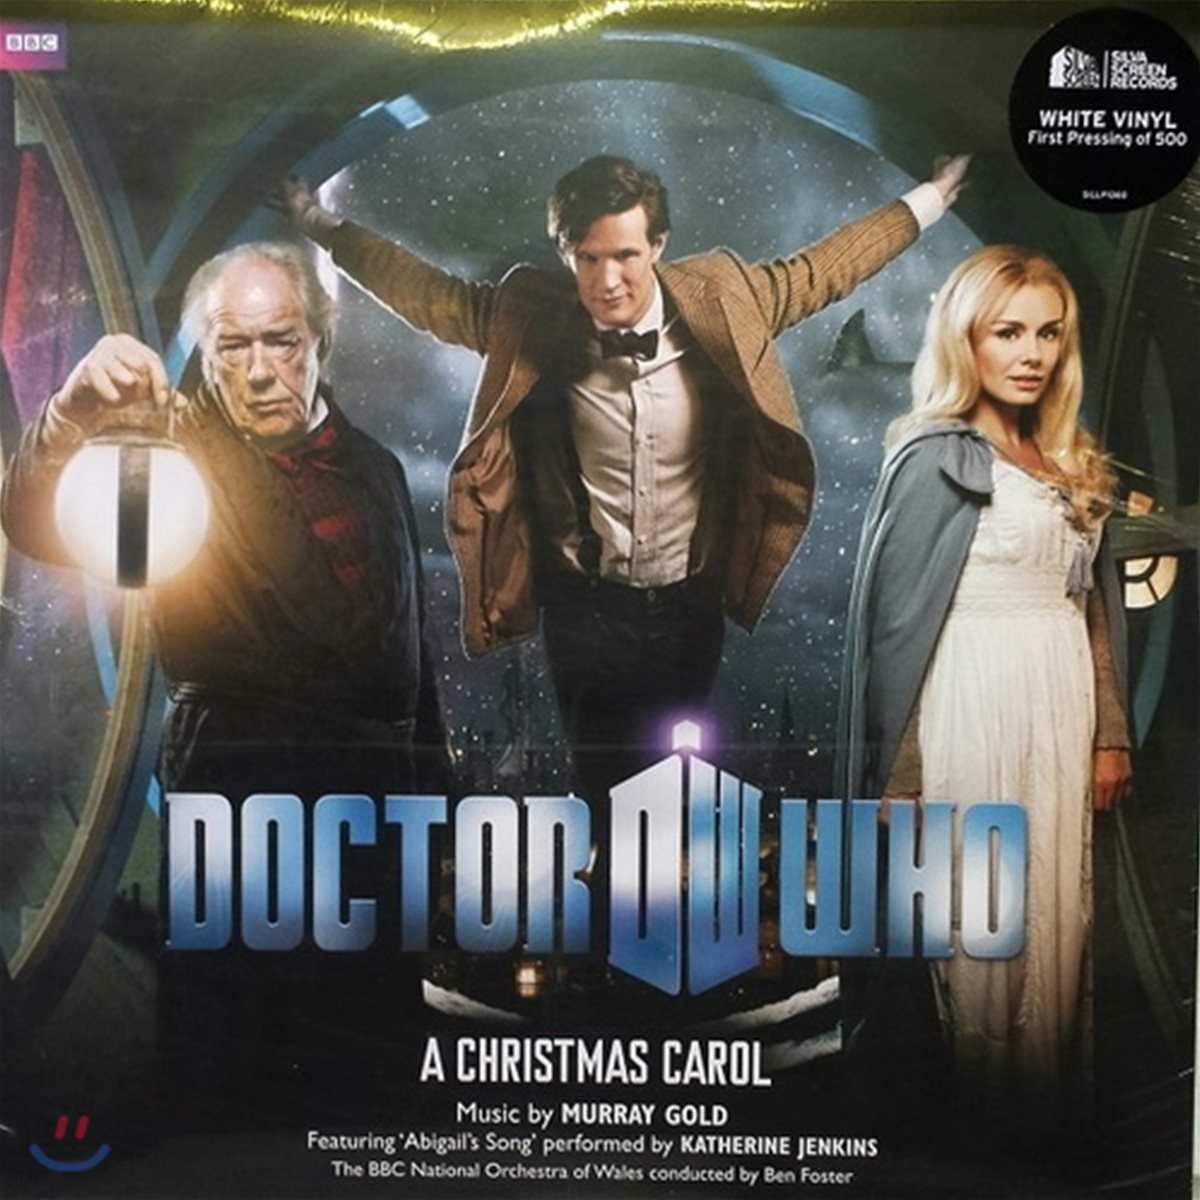 닥터 후 시즌5 크리스마스 스페셜 : 크리스마스 캐롤 드라마음악 (Doctor Who: A Christmas Carol Original TV Soundtrack) [Limited Edition 화이트 컬러 LP]